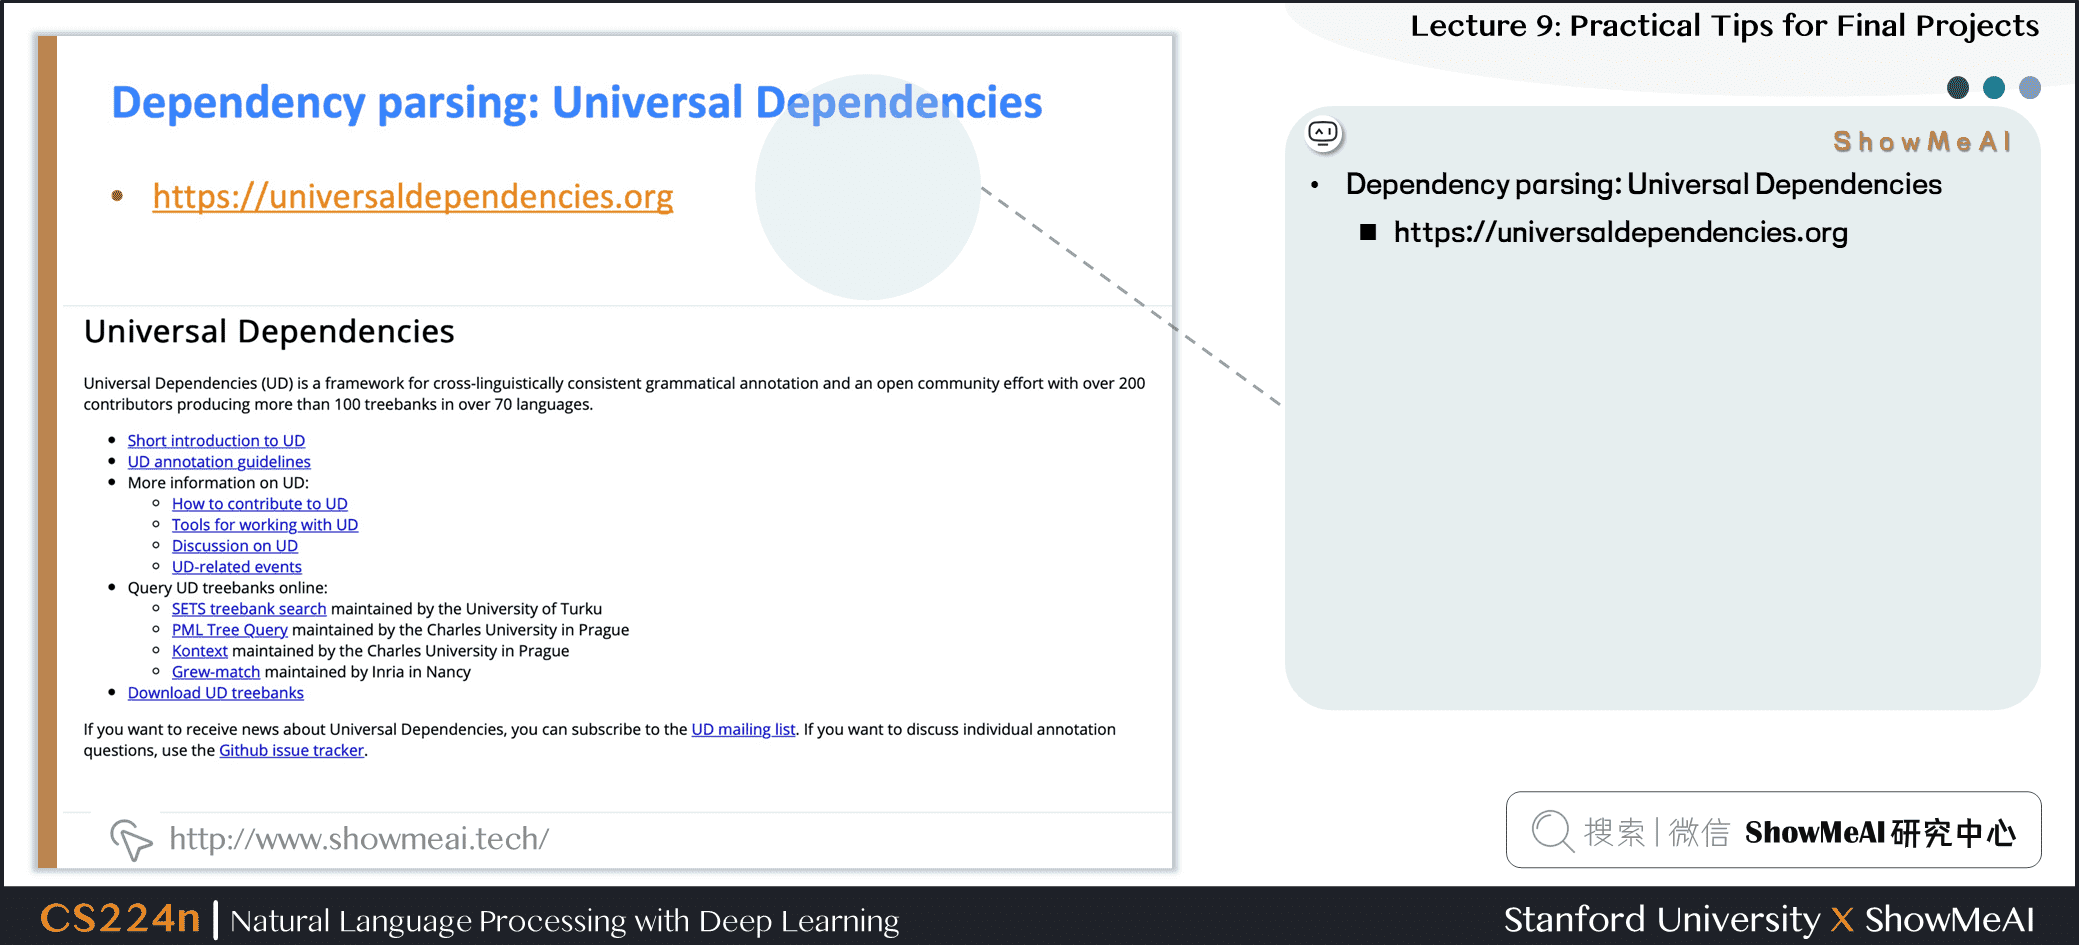 Dependency parsing: Universal Dependencies